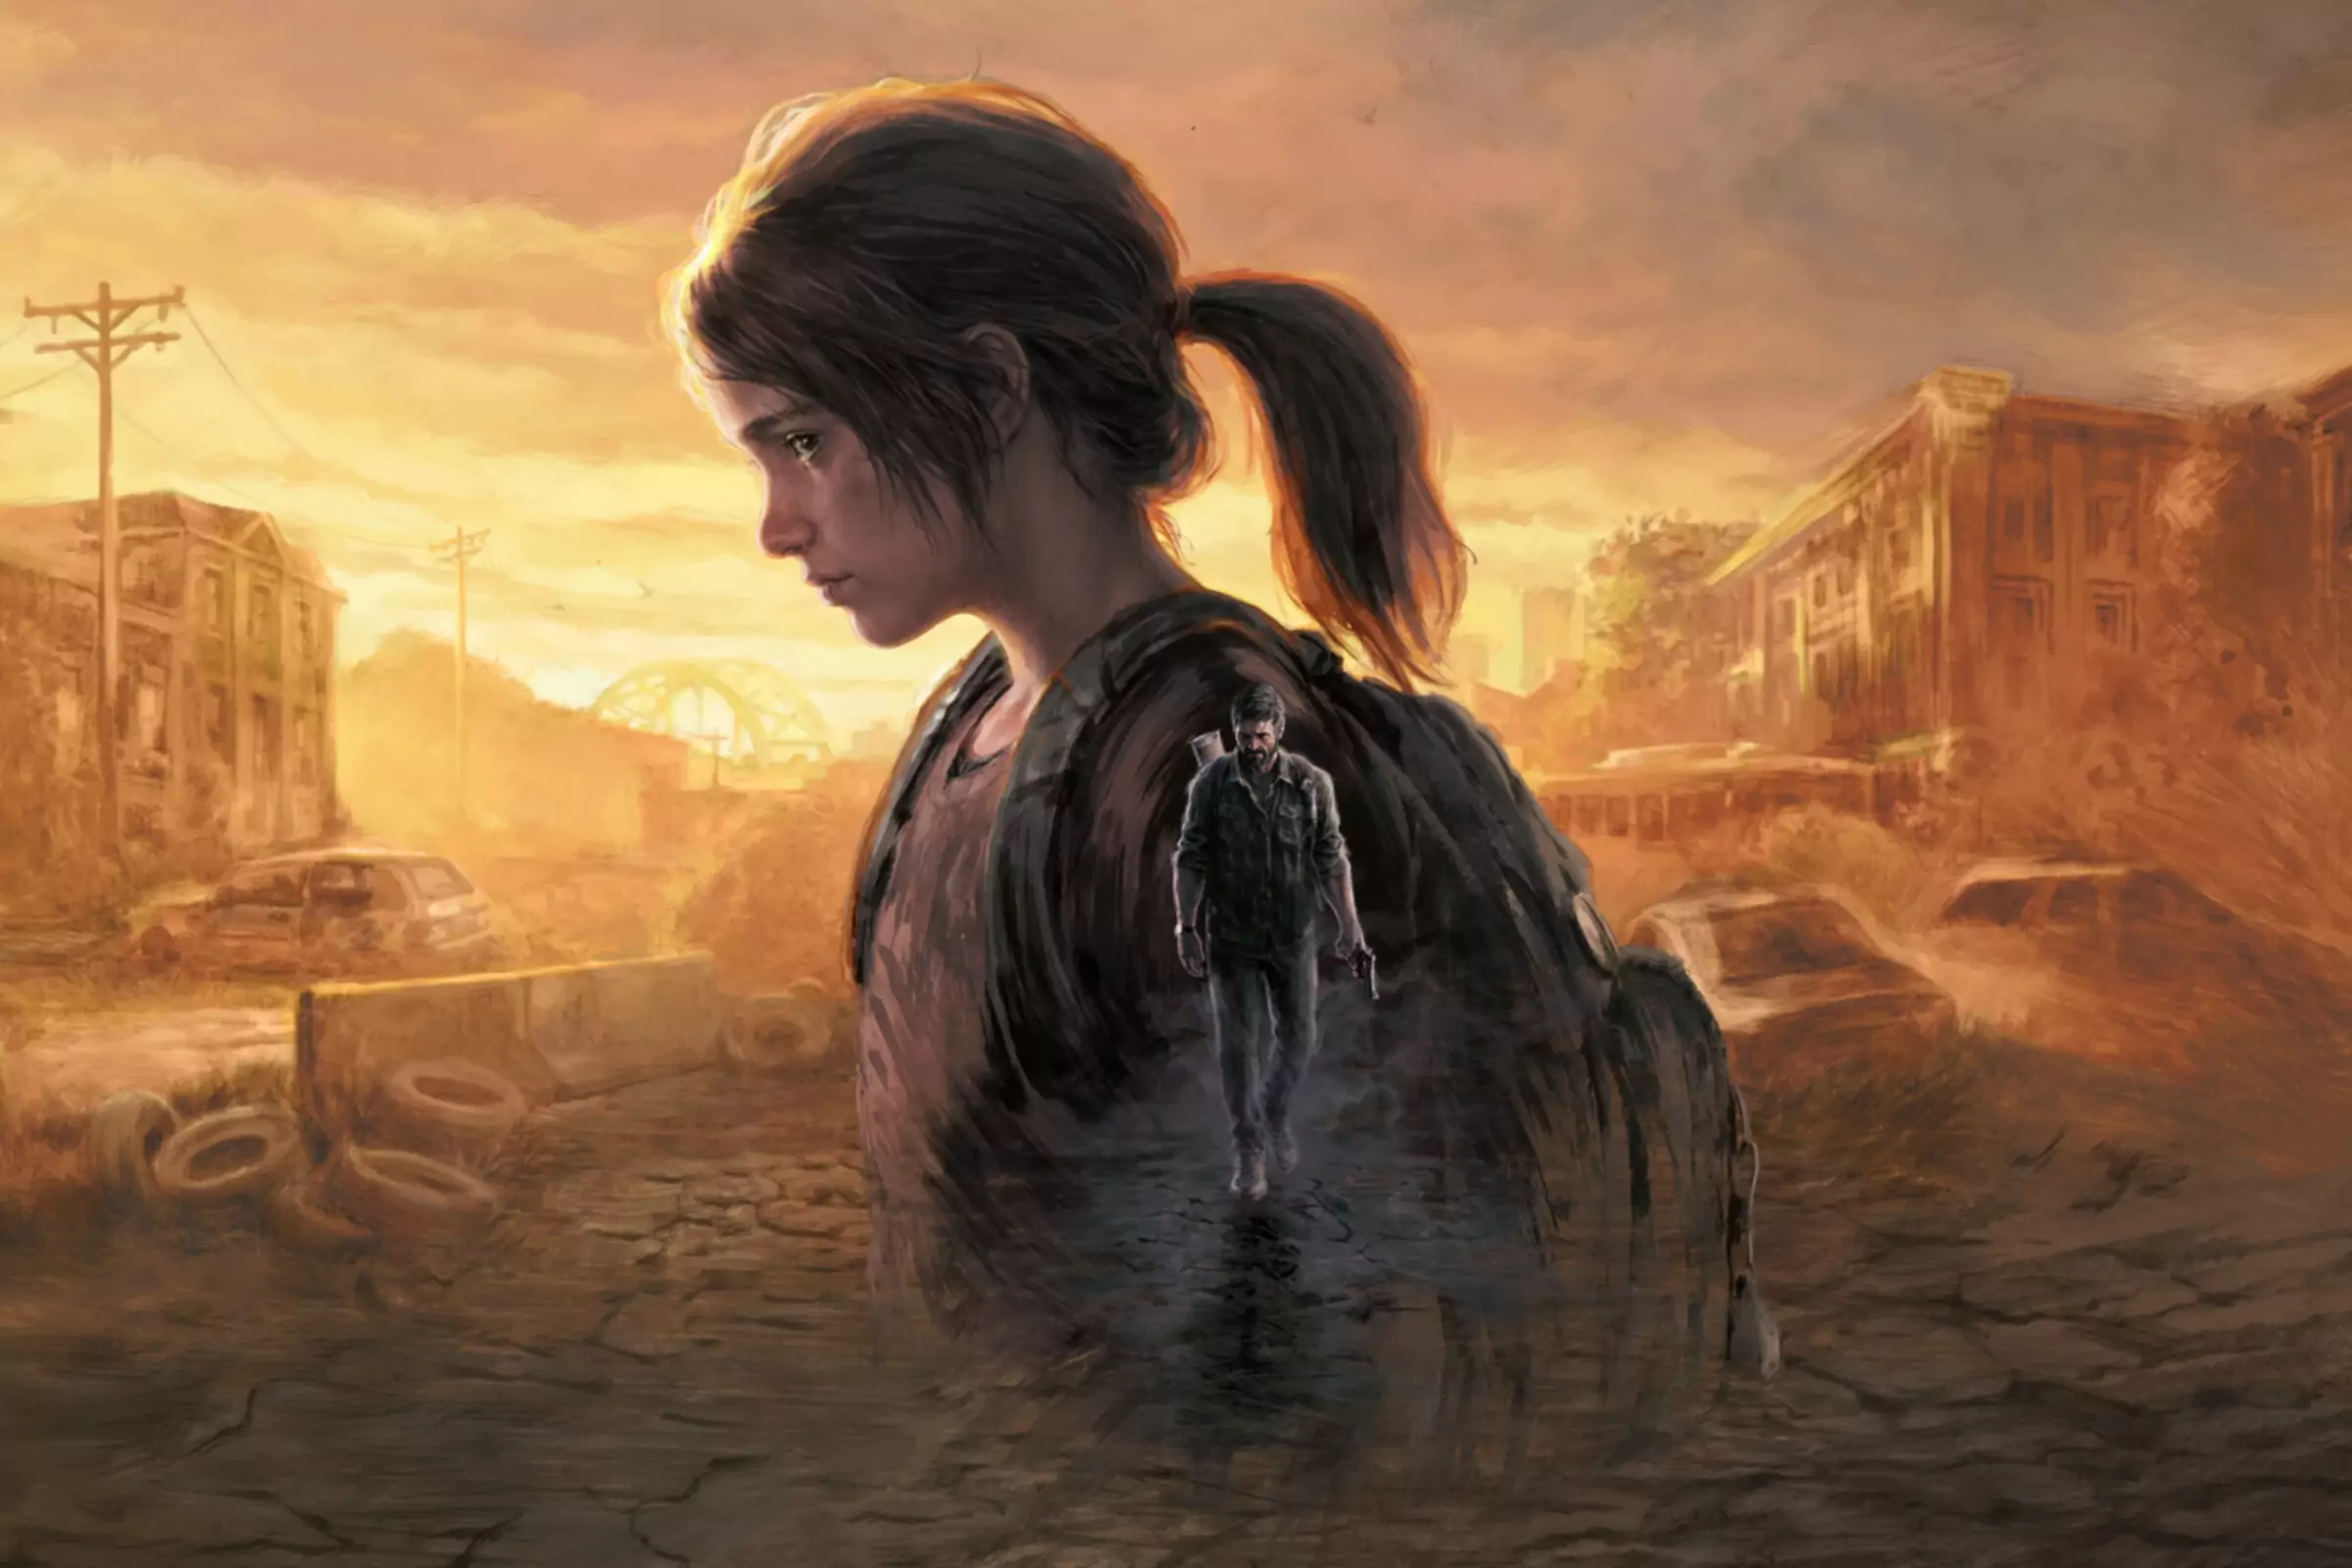 The Last of Us için yapılan sanat çalışmasında büyük bir karakter, küçük bir karakterin üzerine bindirilerek bir...